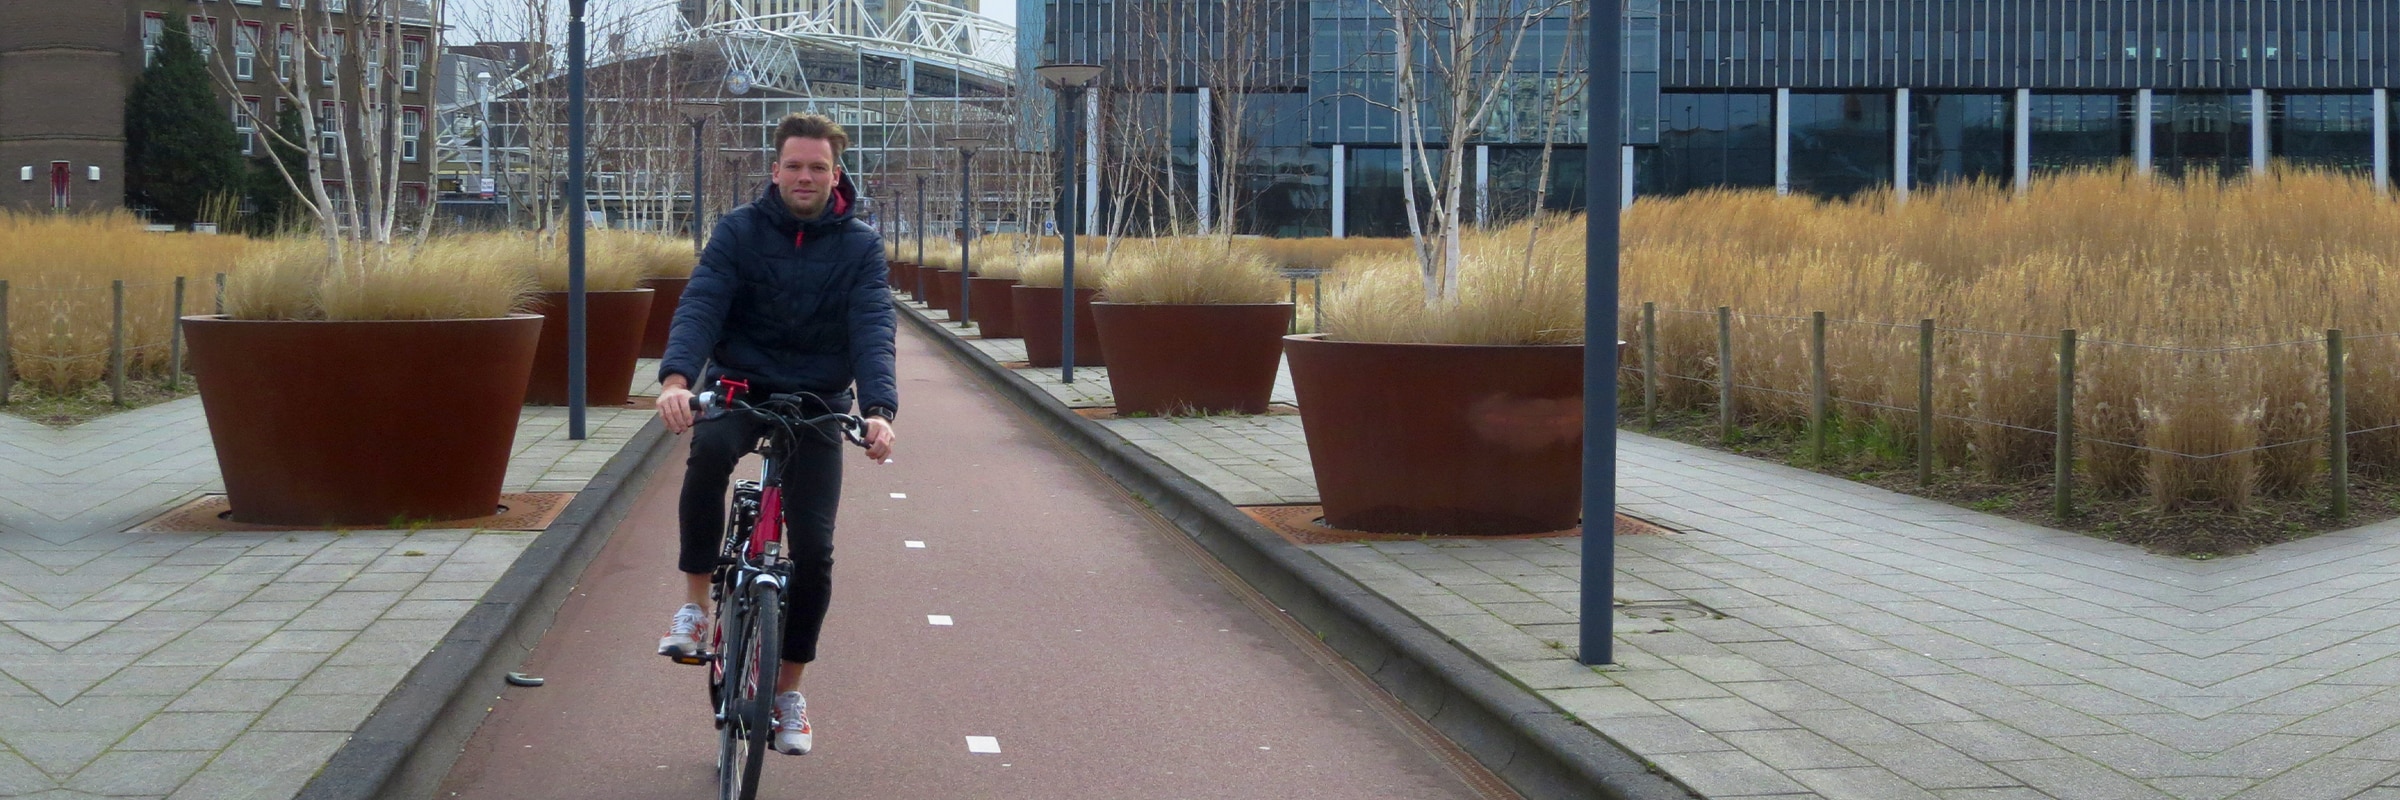 Deelfietsen Leiden. Neem een stadsfiets, elektrische fiets of bakfiets mee via het deelfietsensysteem in Leiden! Snel, gemakkelijk en goedkoop. EasyFiets Leiden.